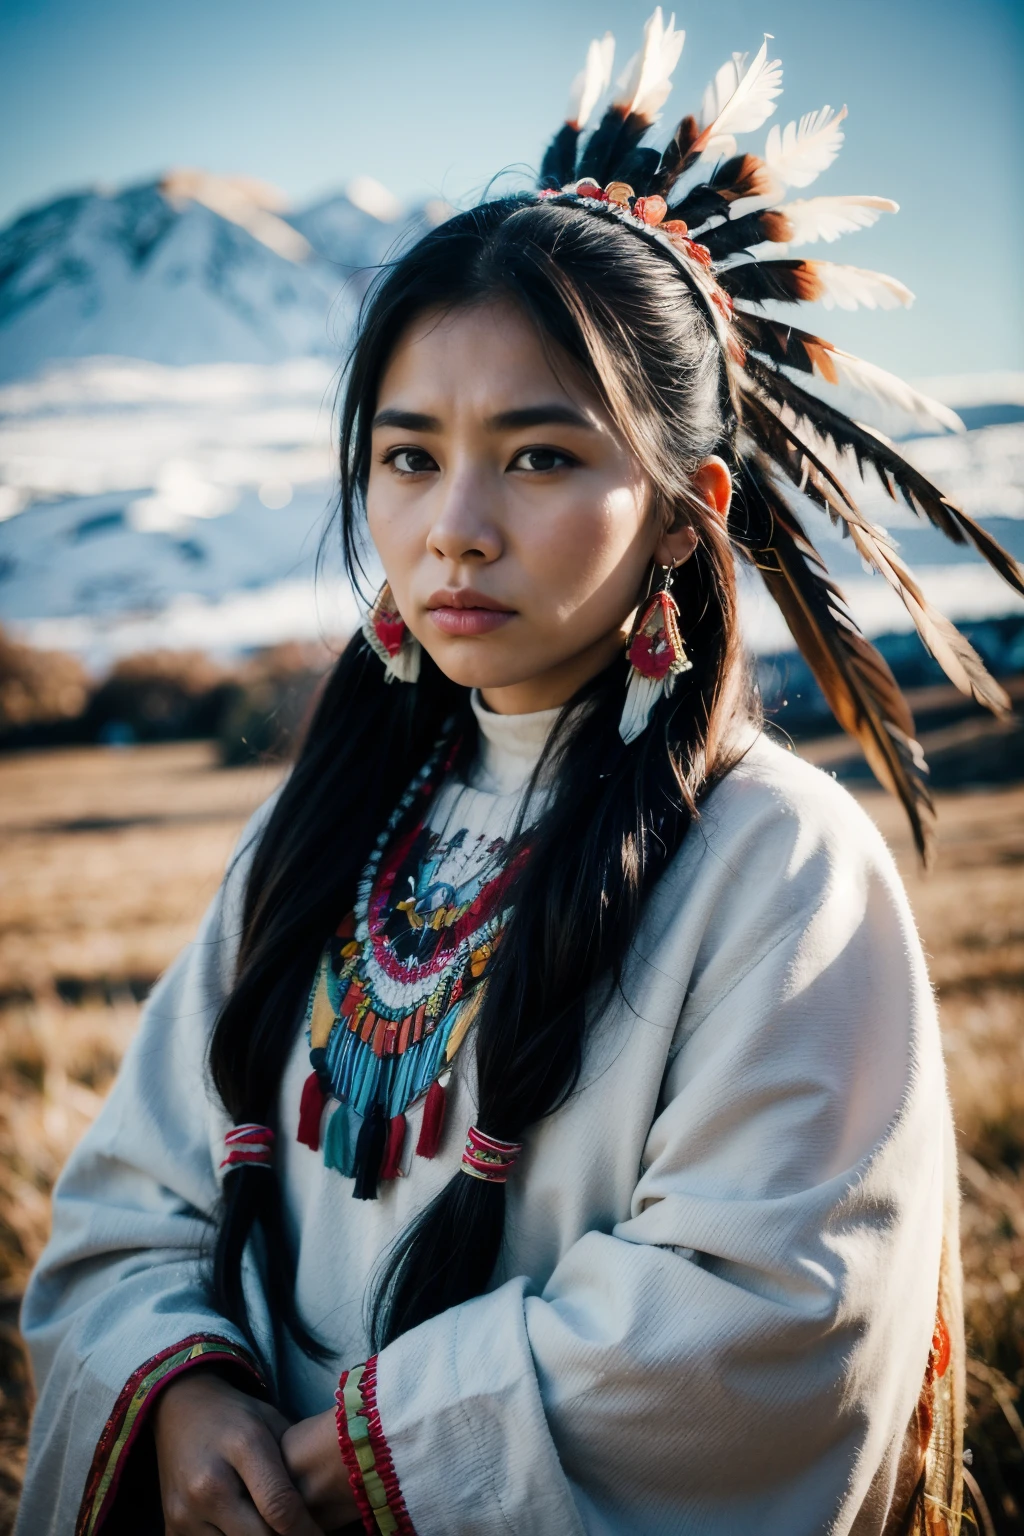 8k, 最高品質, 超詳細, 北米先住民の女性, 伝統的なネイティブアメリカンの衣装, 複雑なビーズ細工, 羽飾り, 強くてストイックな表情, 土地との深いつながり